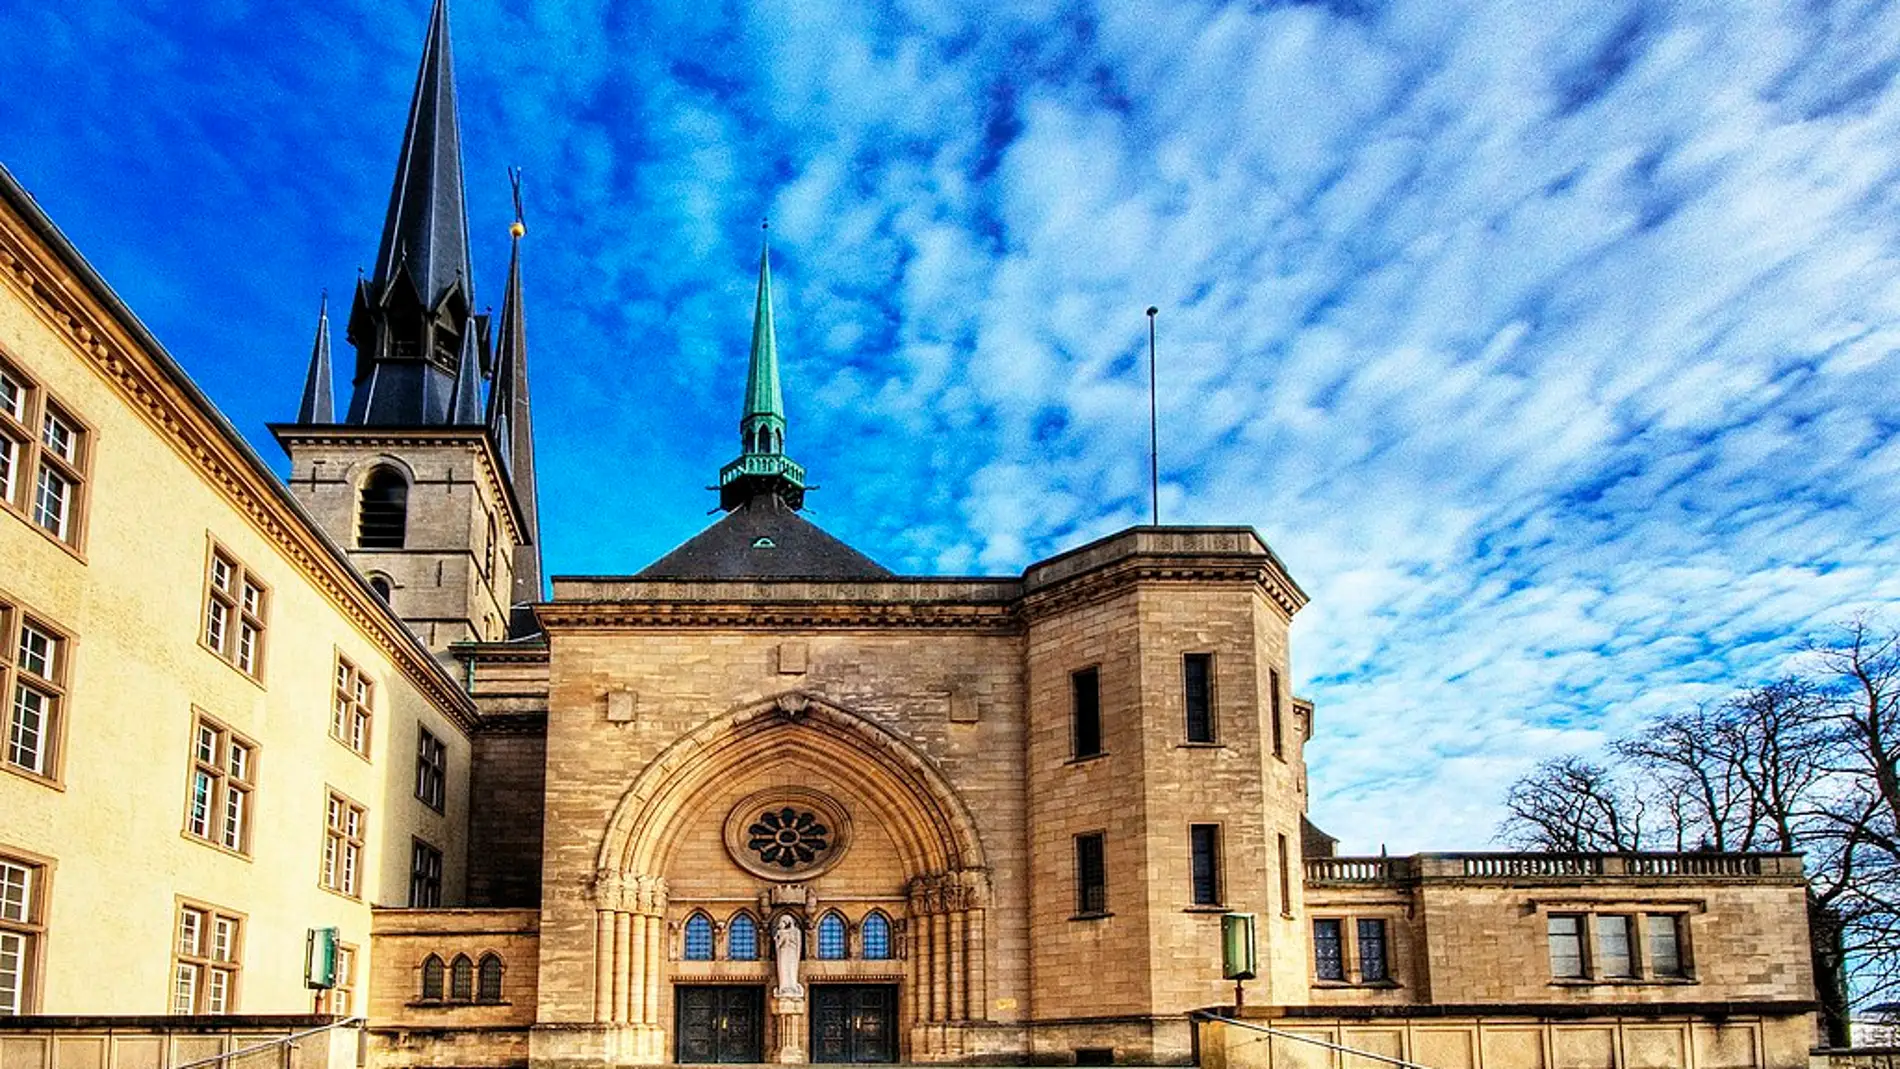 Catedral de Santa María de Luxemburgo: su historia y datos curiosos que no te dejarán indiferente